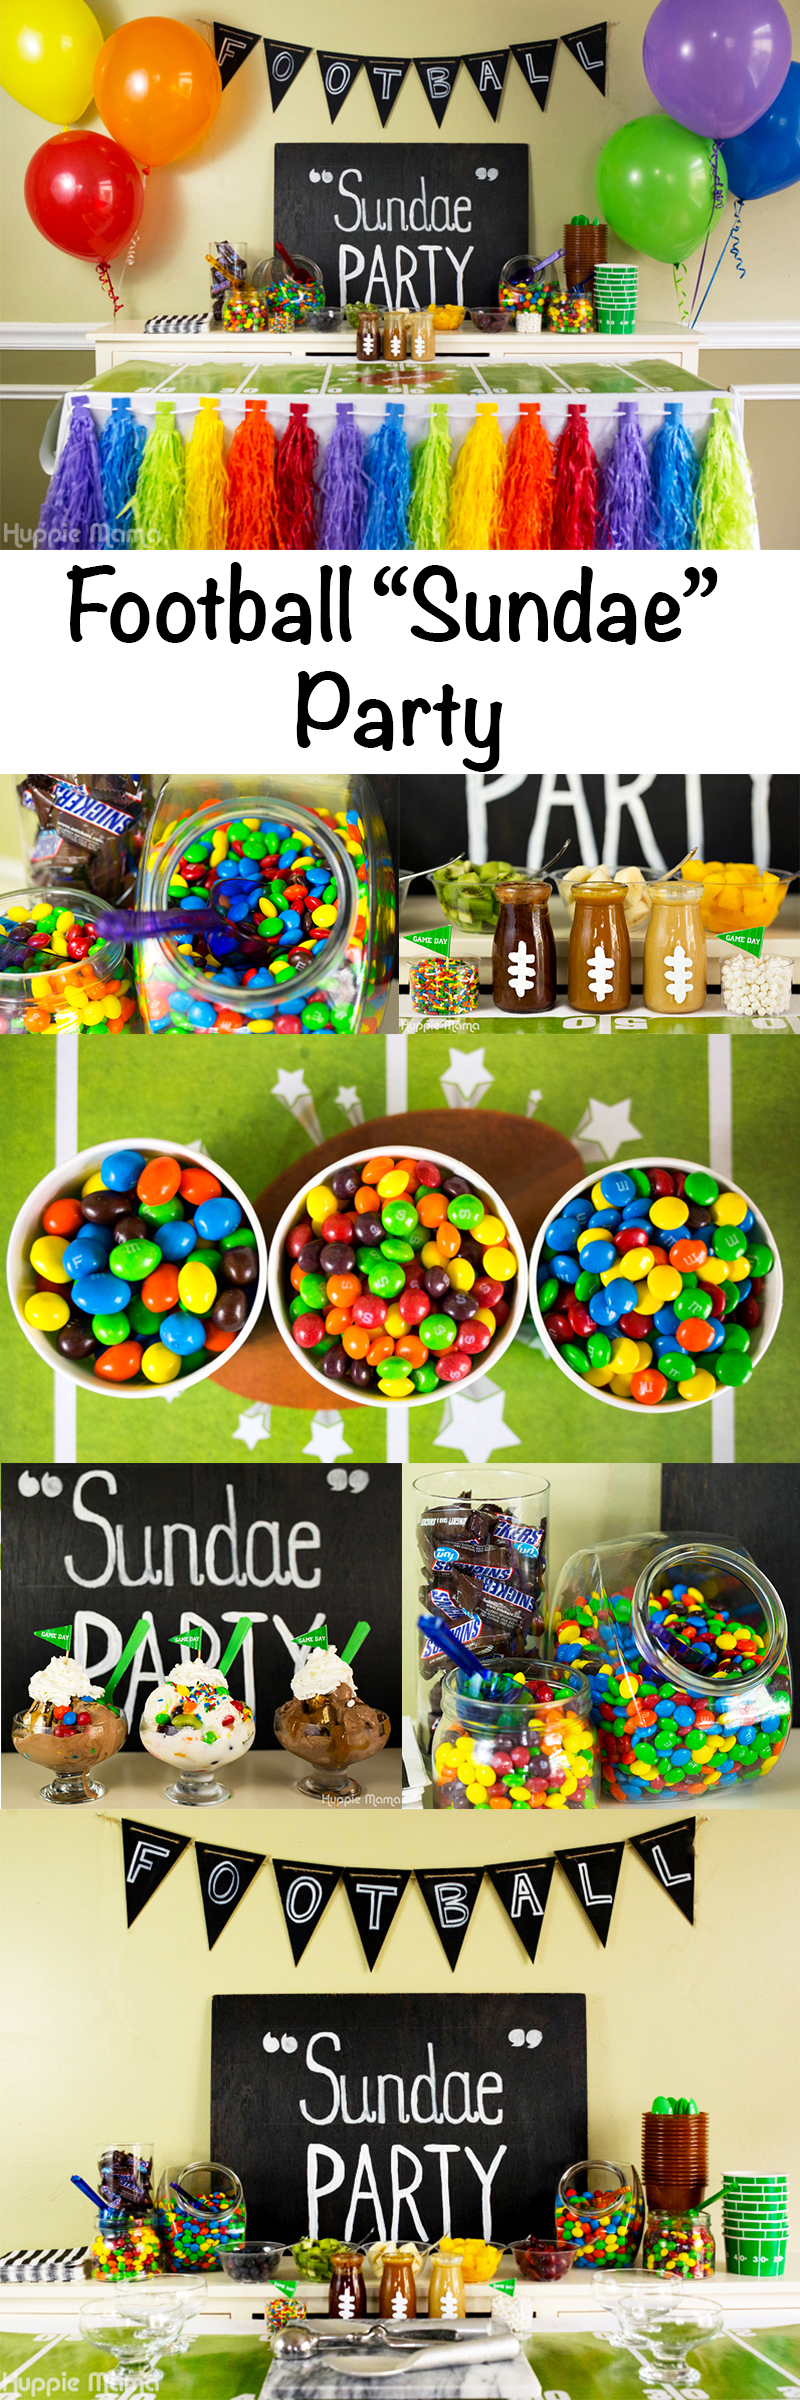 Football sundae party idea